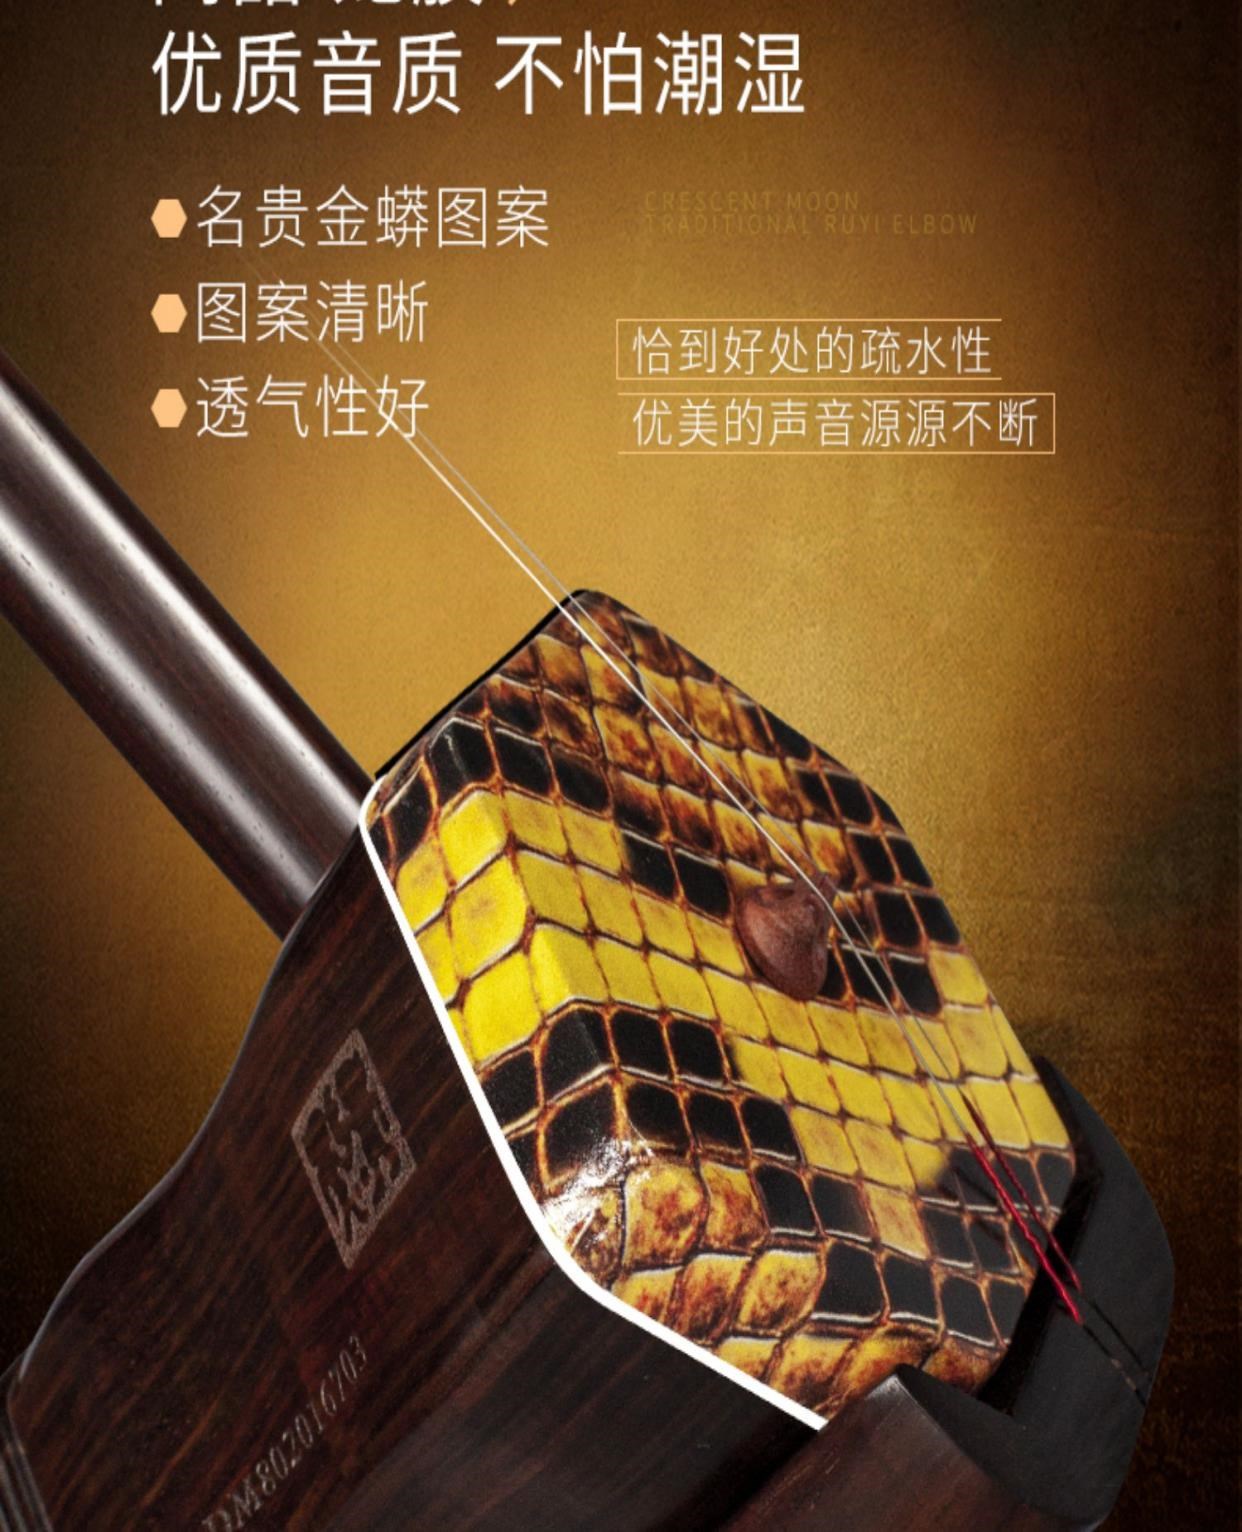 Chính hãng Wen Shao Ming Qing vật liệu cũ cũ bằng gỗ gụ Tô Châu Erhu nhạc cụ người lớn biểu diễn chuyên nghiệp cao cấp nhà sản xuất bộ sưu tập cao cấp - Nhạc cụ dân tộc